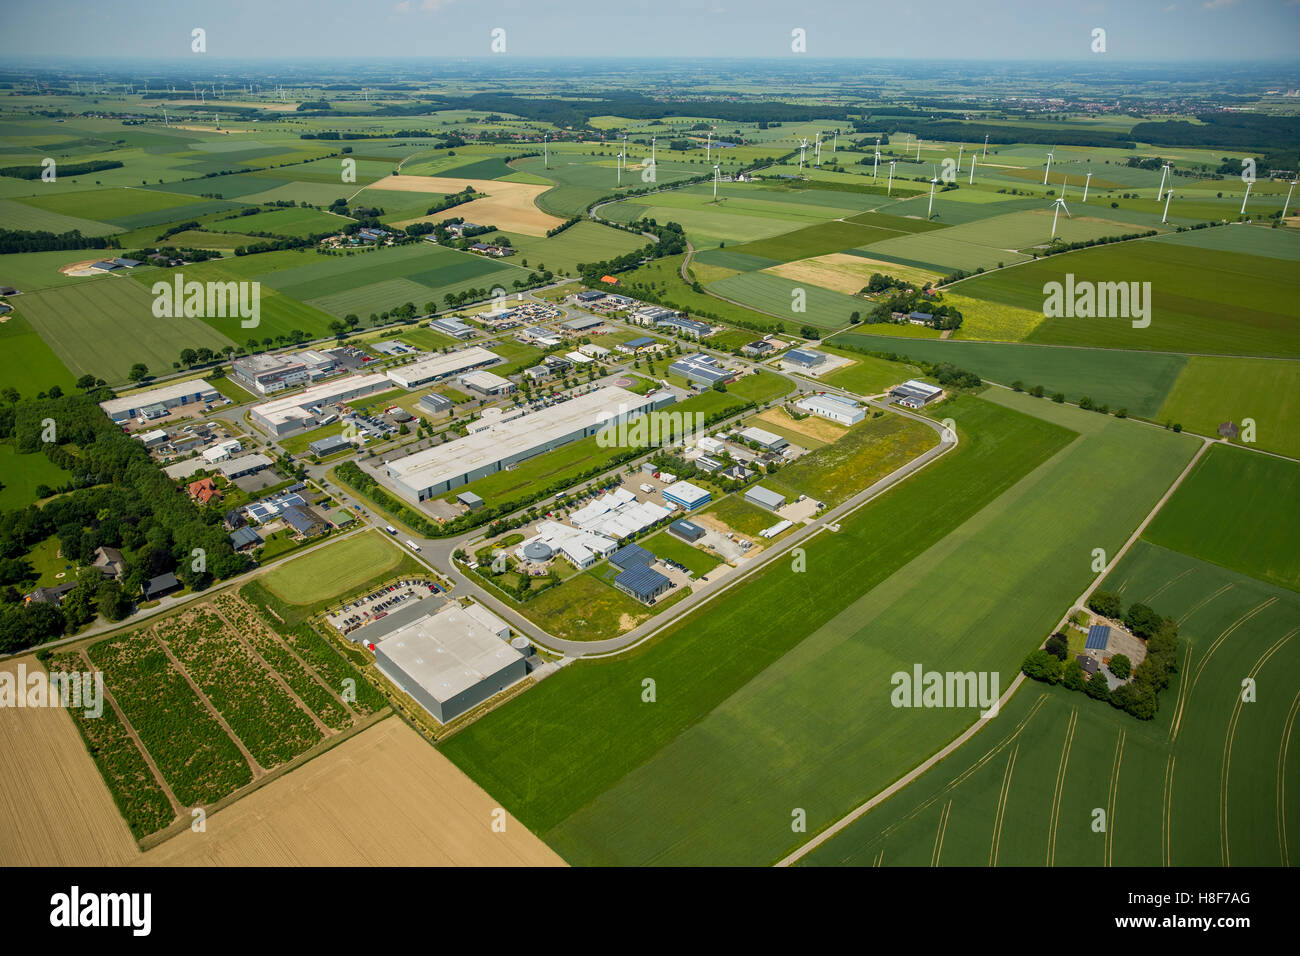 Vista aérea de la zona comercial, Zona Industrial, turbinas de viento detrás, Belecke, Warstein, Sauerland, Renania del Norte-Westfalia Foto de stock